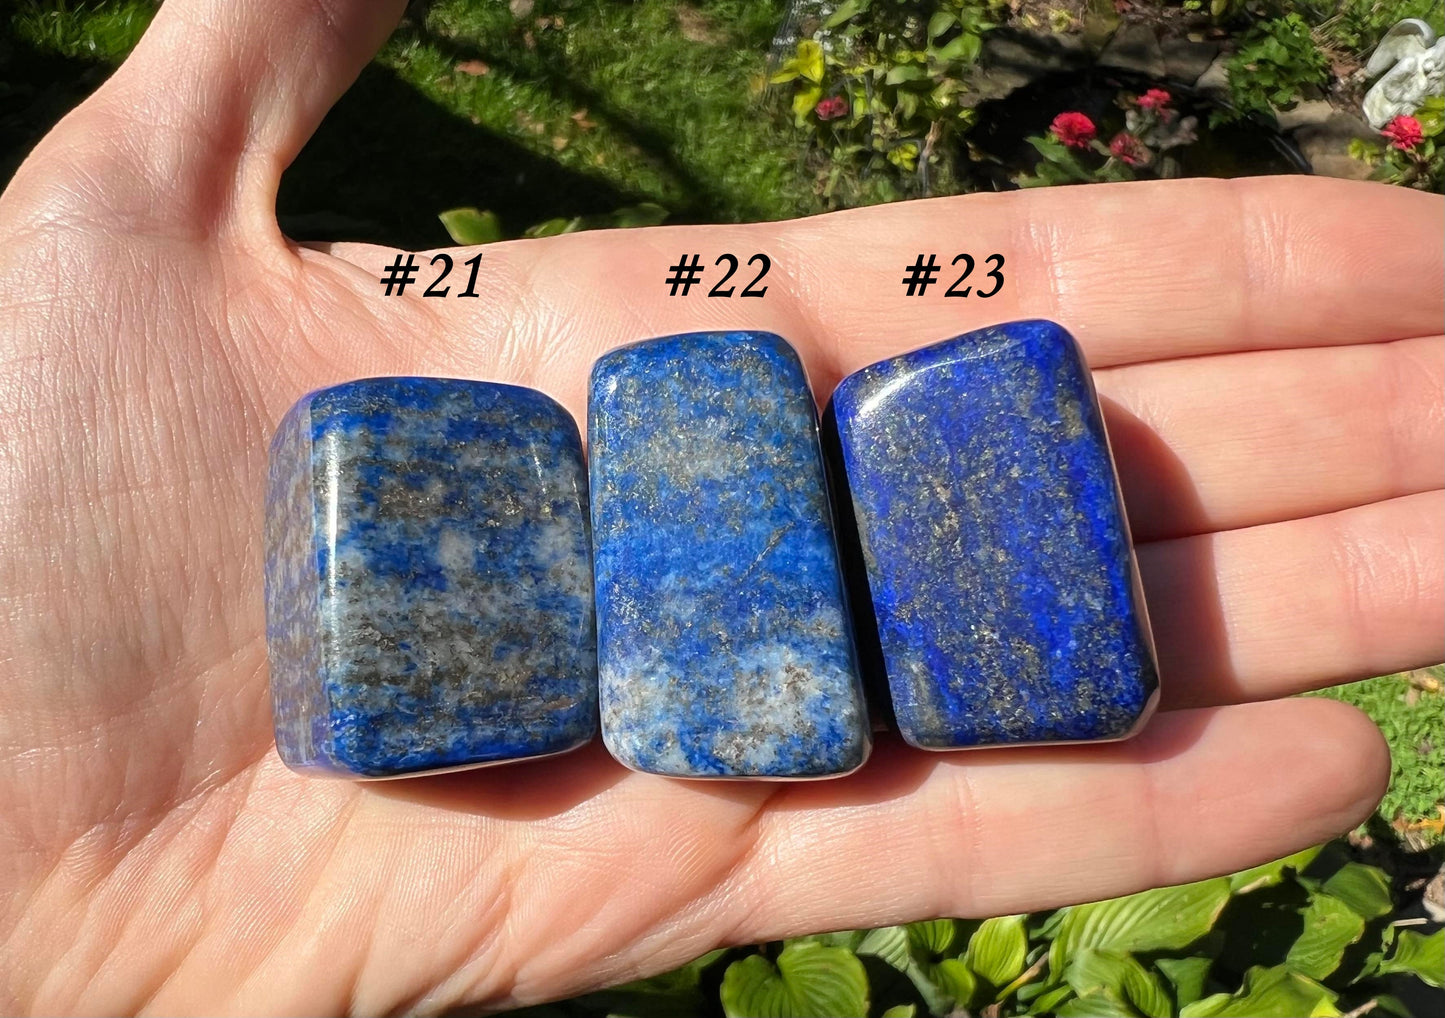 Lapis Lazuli Tumbled Stones ~ Large